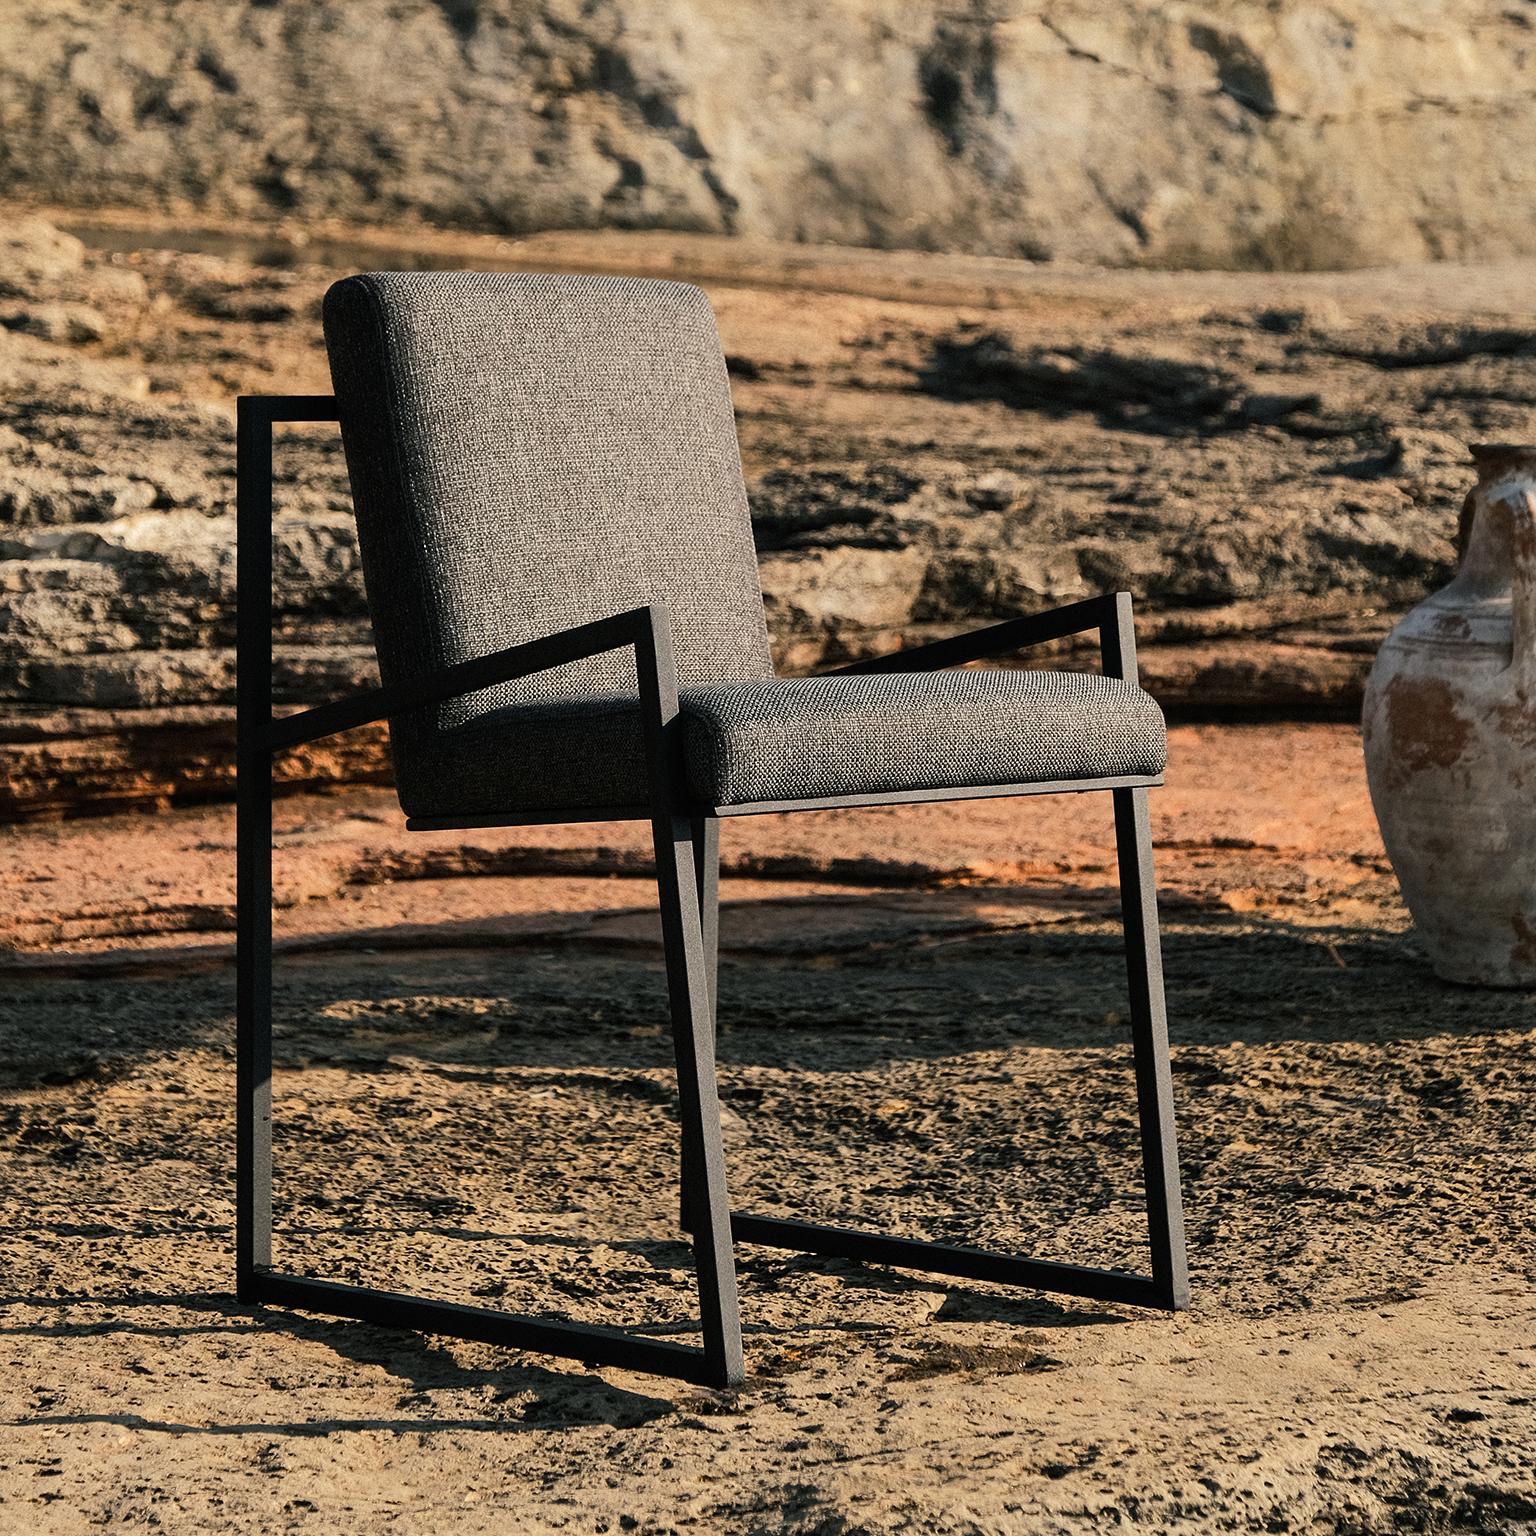 Der schwarze Metallstuhl Famed bringt bequemen Sitzkomfort und luxuriöses Design in Ihr Wohnzimmer...

Der FAMED-Stuhl, bei dem das bequeme Sitzen im Vordergrund steht, fasziniert durch seinen kompakten Platz, den er zusammen mit einem Esstisch